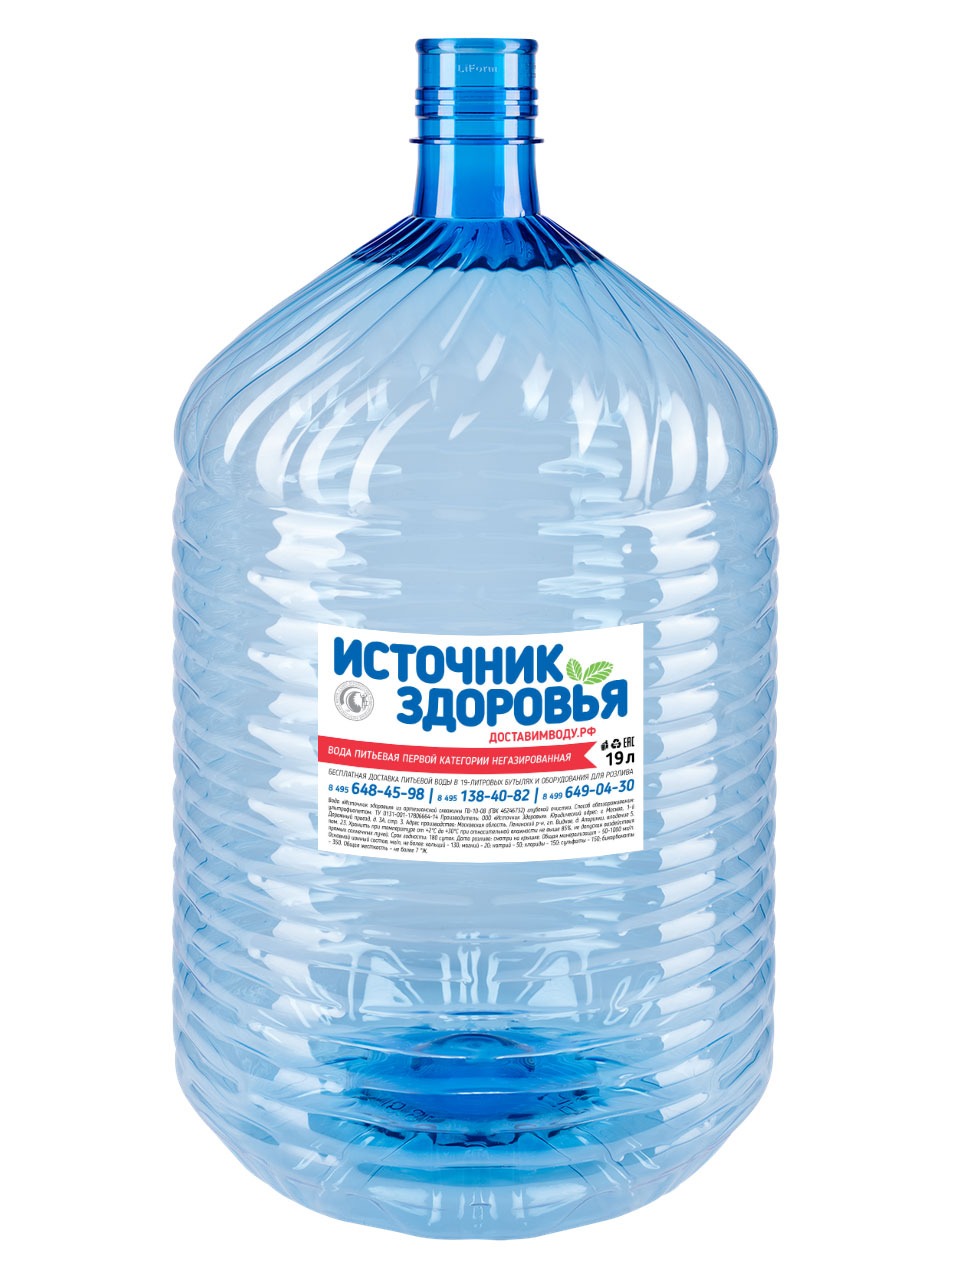 Питьевая артезианская вода "Источник здоровья" 19л  - В ОДНОРАЗОВОЙ ТАРЕ